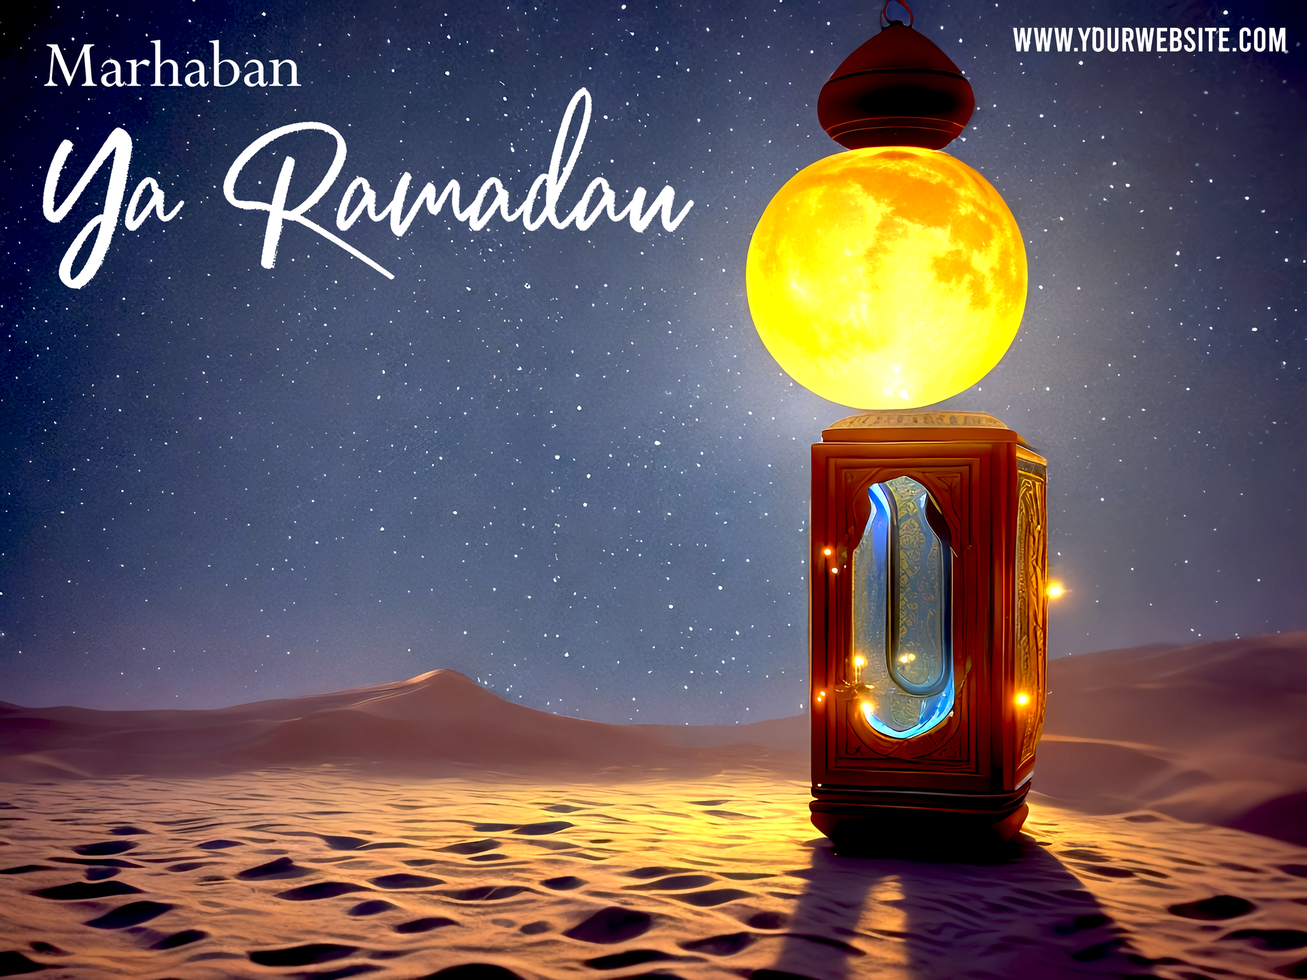 Ramadan poster met lantaarn in mooi nacht met crecent maan beeld psd